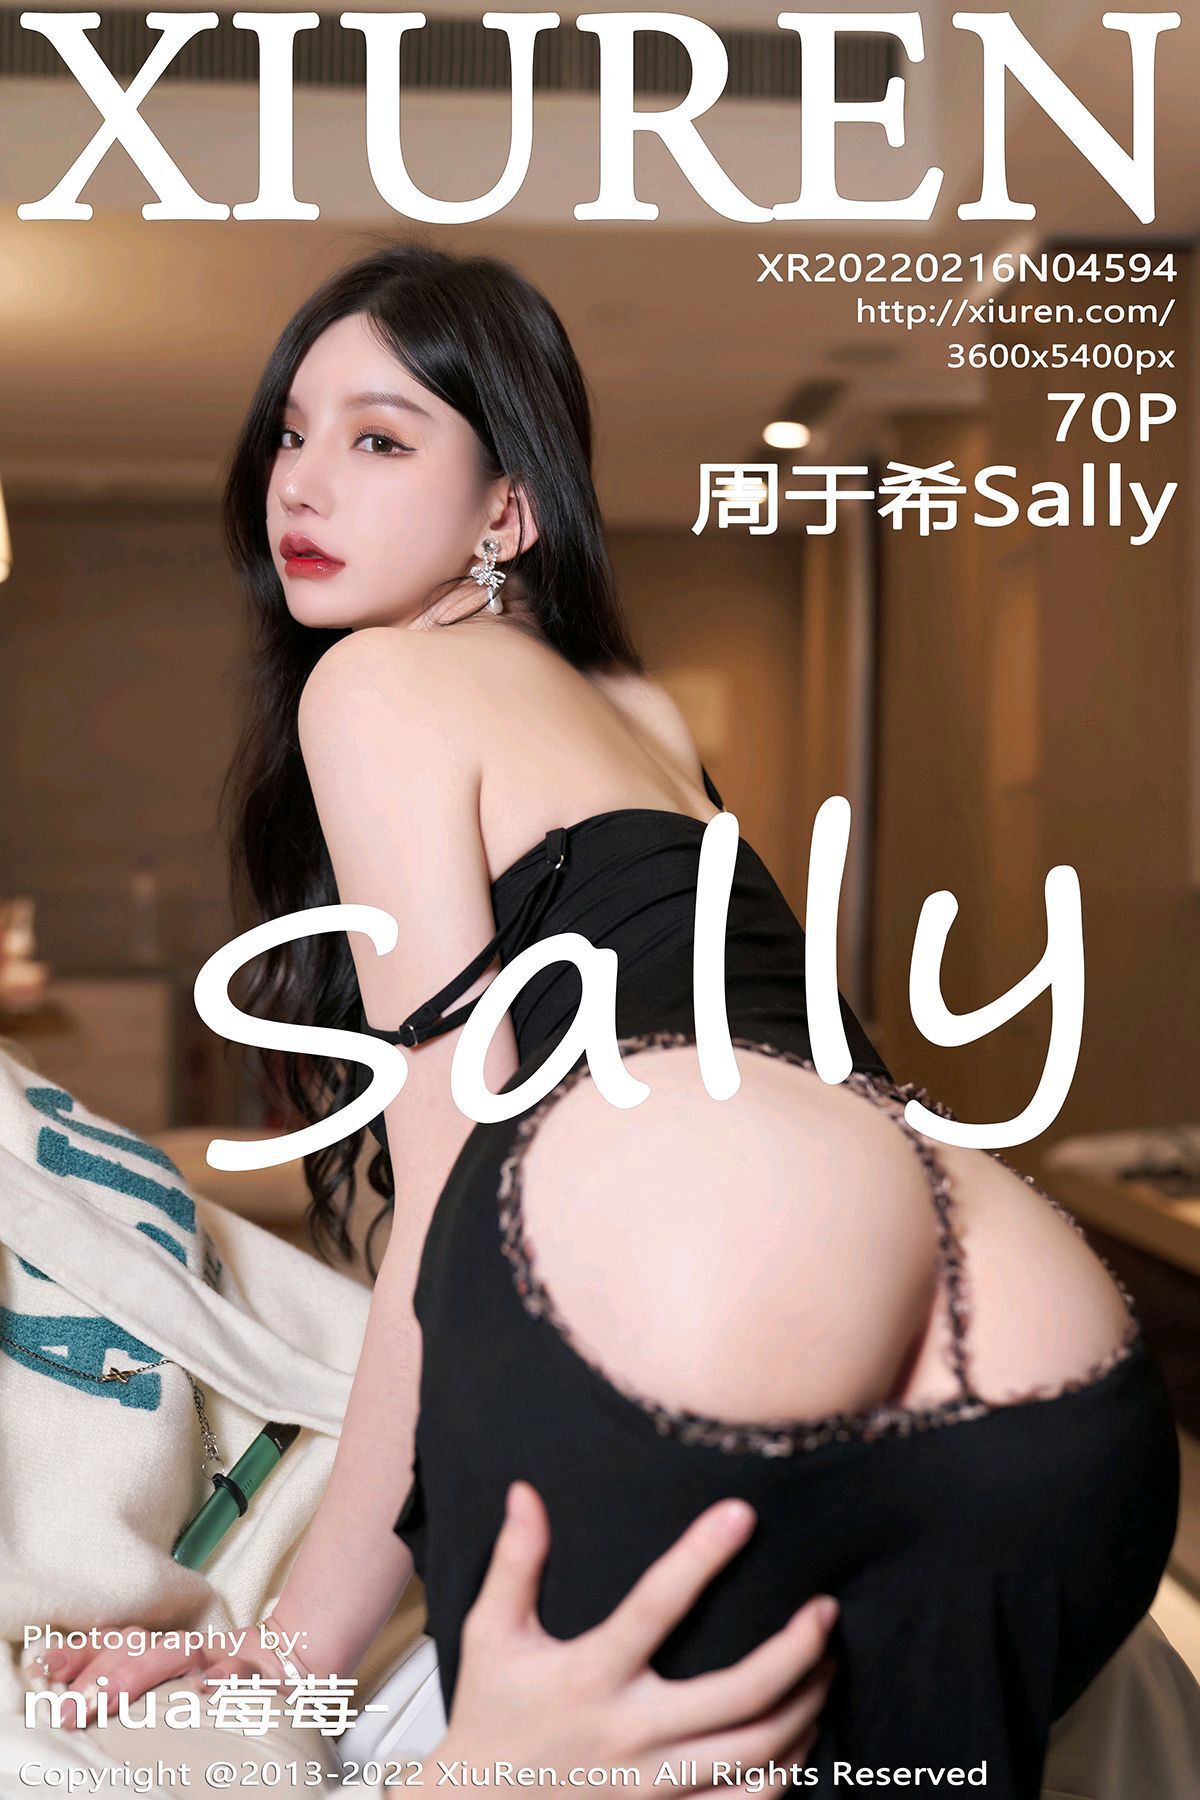 Xiuren 2022.02.16 NO.4594 Zhou Yuxi Sally